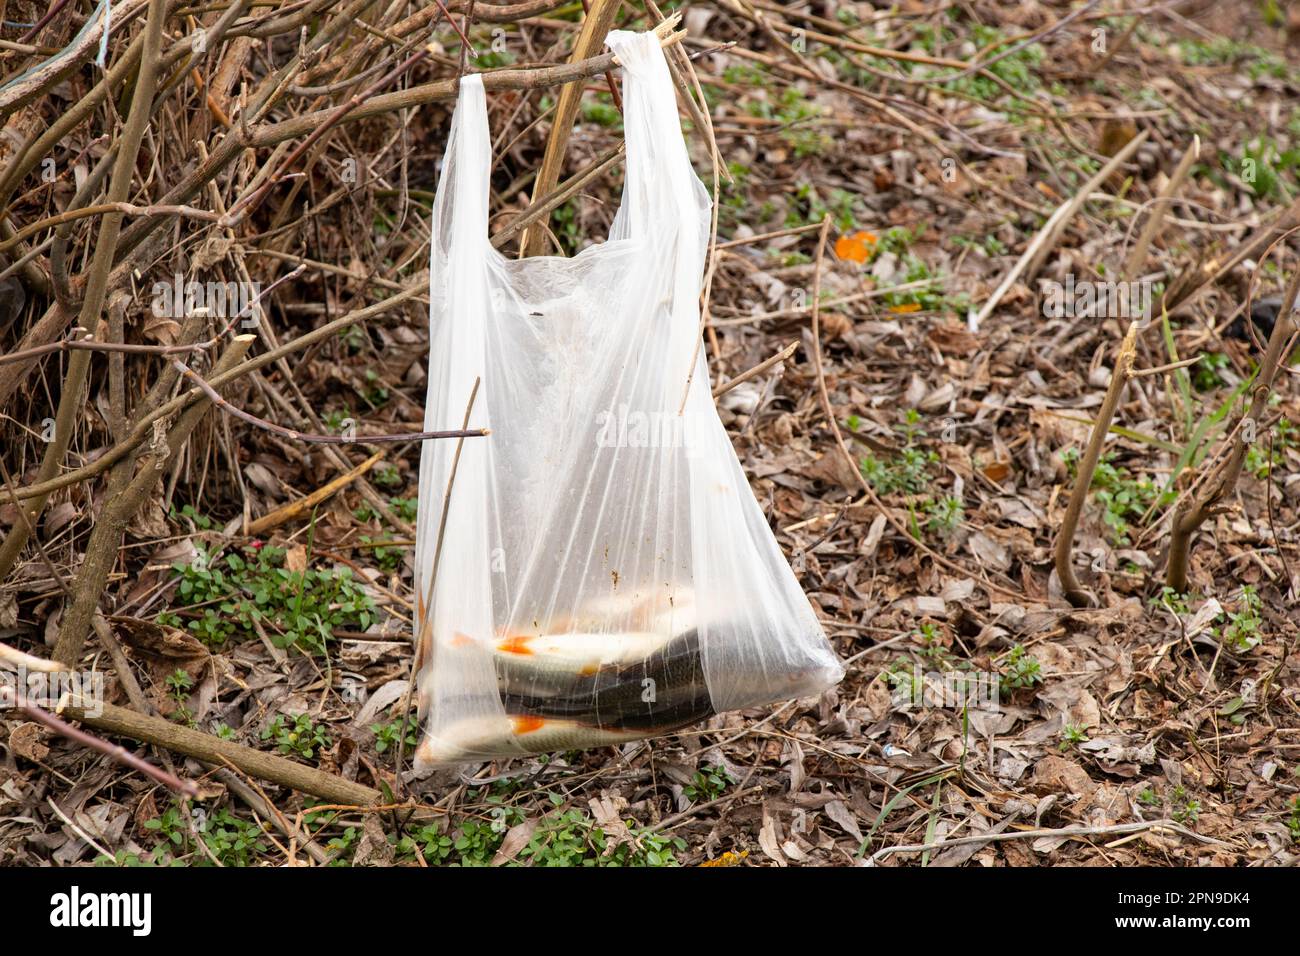 Le poisson de rivière capturé se trouve dans un sac en plastique lors d'un voyage de pêche dans une forêt pèse sur une branche en Ukraine Banque D'Images